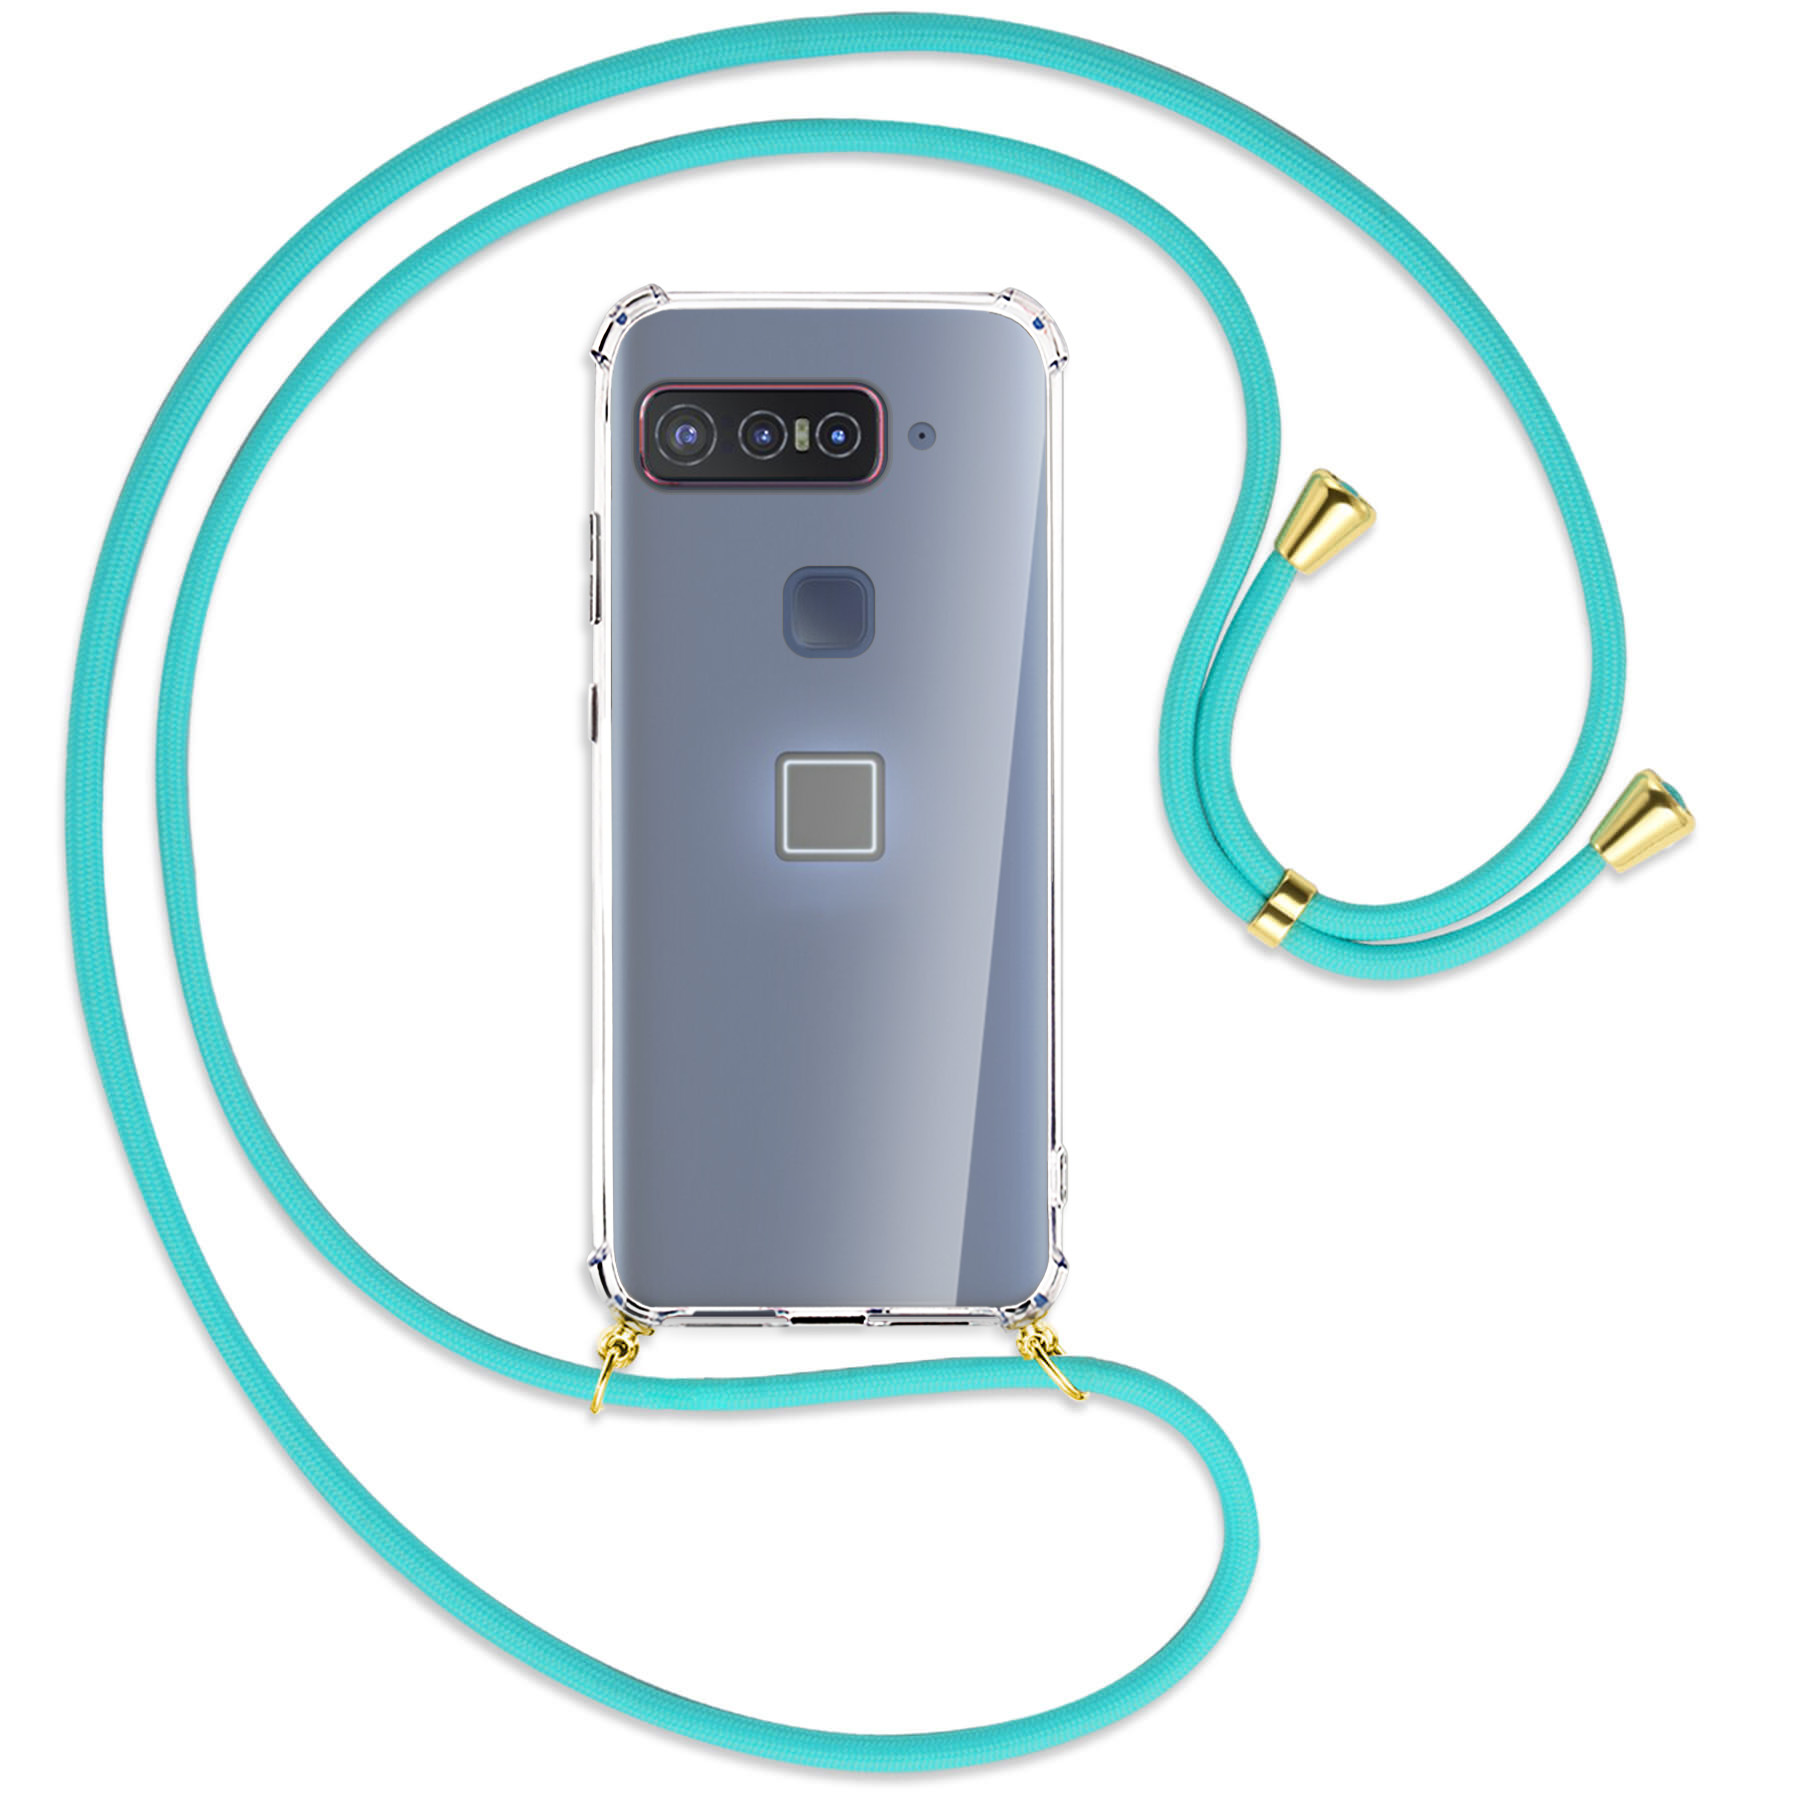 ENERGY / MTB Asus, Türkis Smartphone Gold for mit Snapdragon MORE Insiders, Backcover, Umhänge-Hülle Kordel, Qualcomm